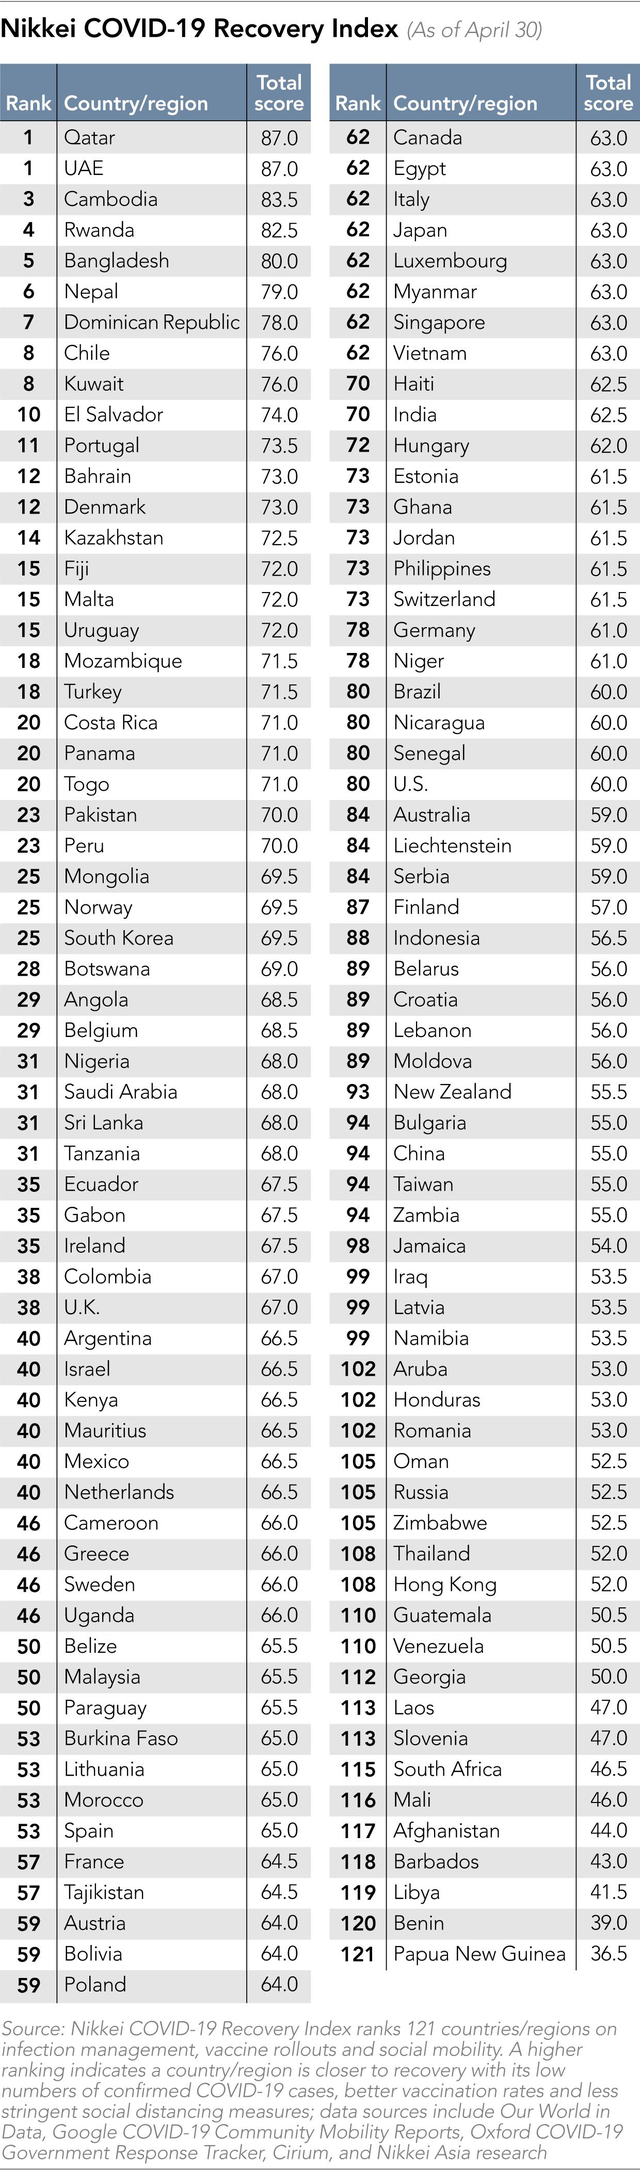 Việt Nam nhảy 30 bậc trong bảng xếp hạng Chỉ số phục hồi Covid-19, vươn lên ngang Nhật Bản, Singapore